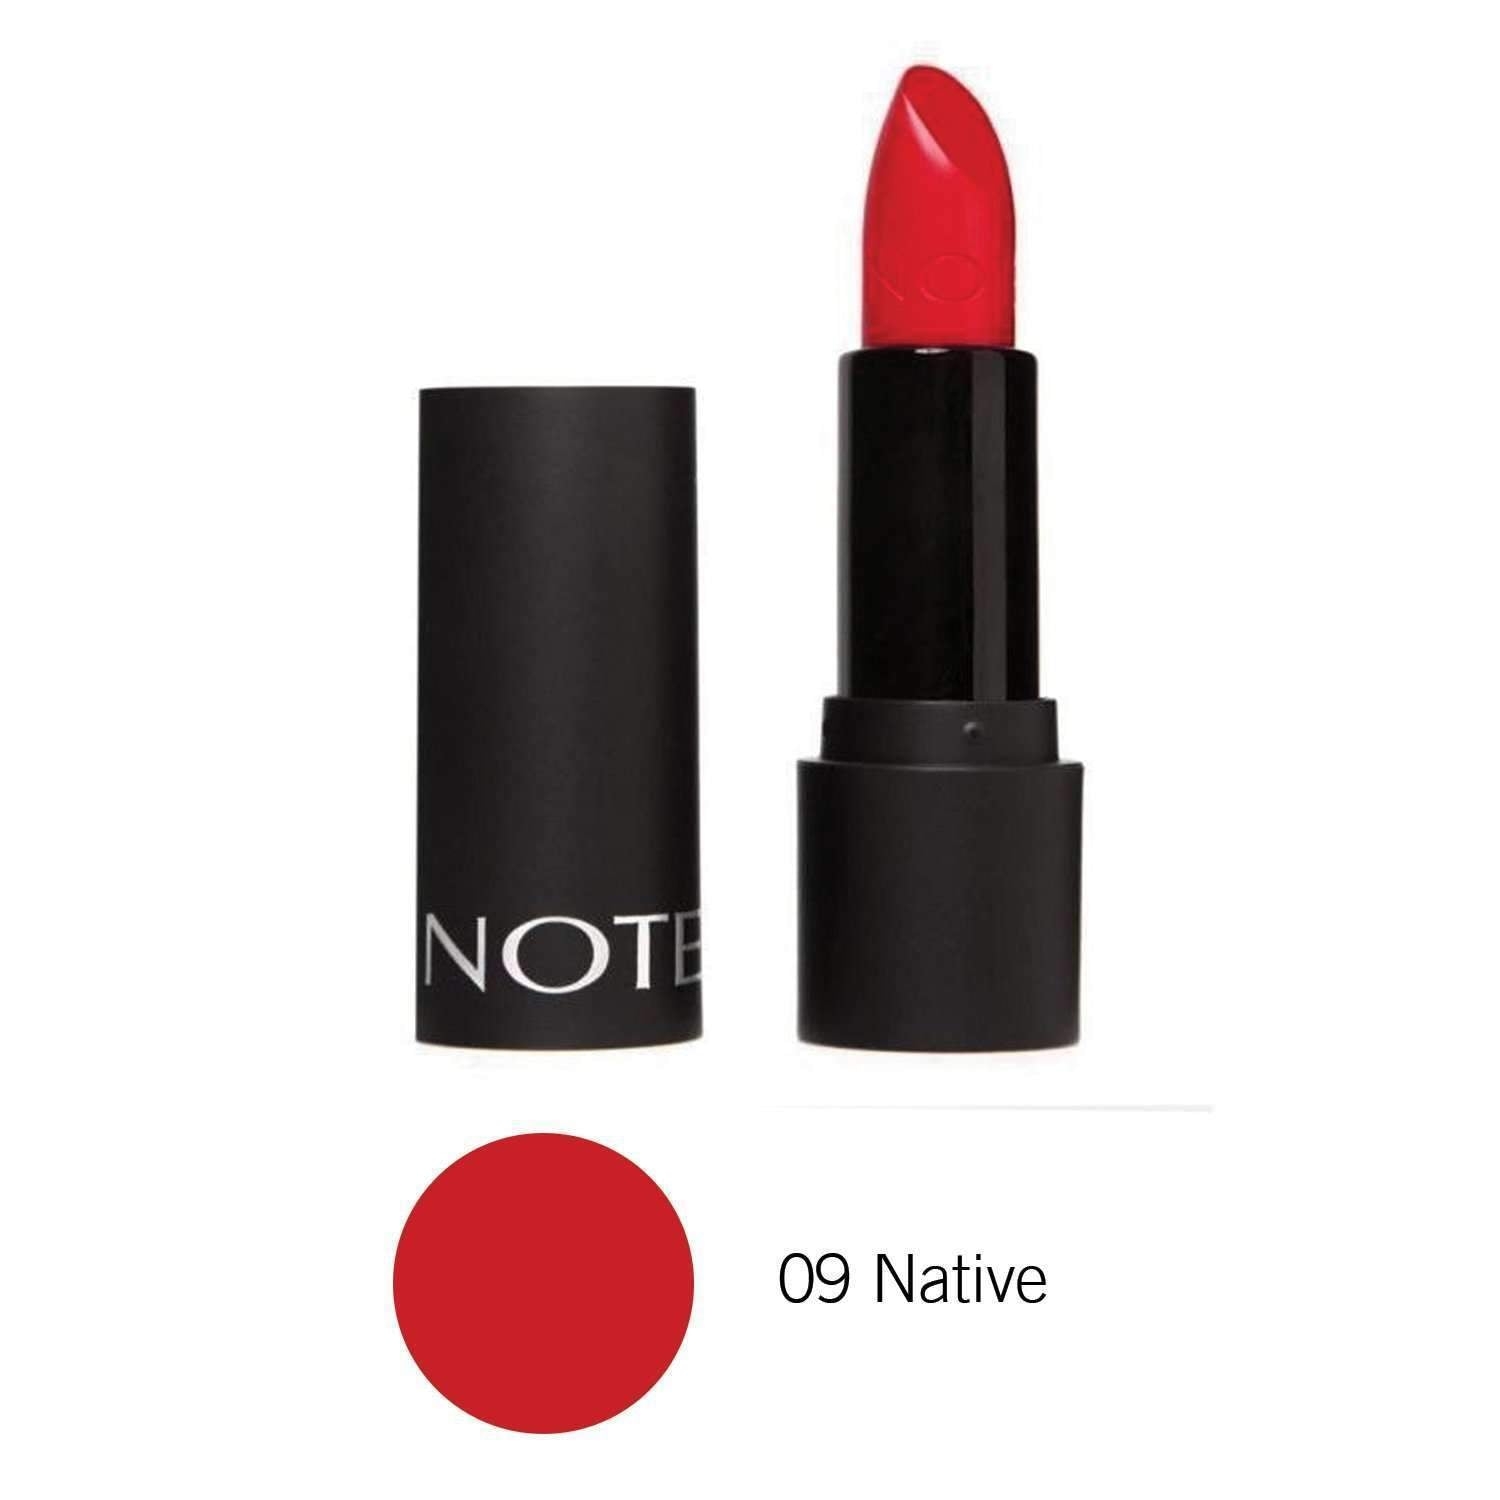 NOTE | Native Lipstick